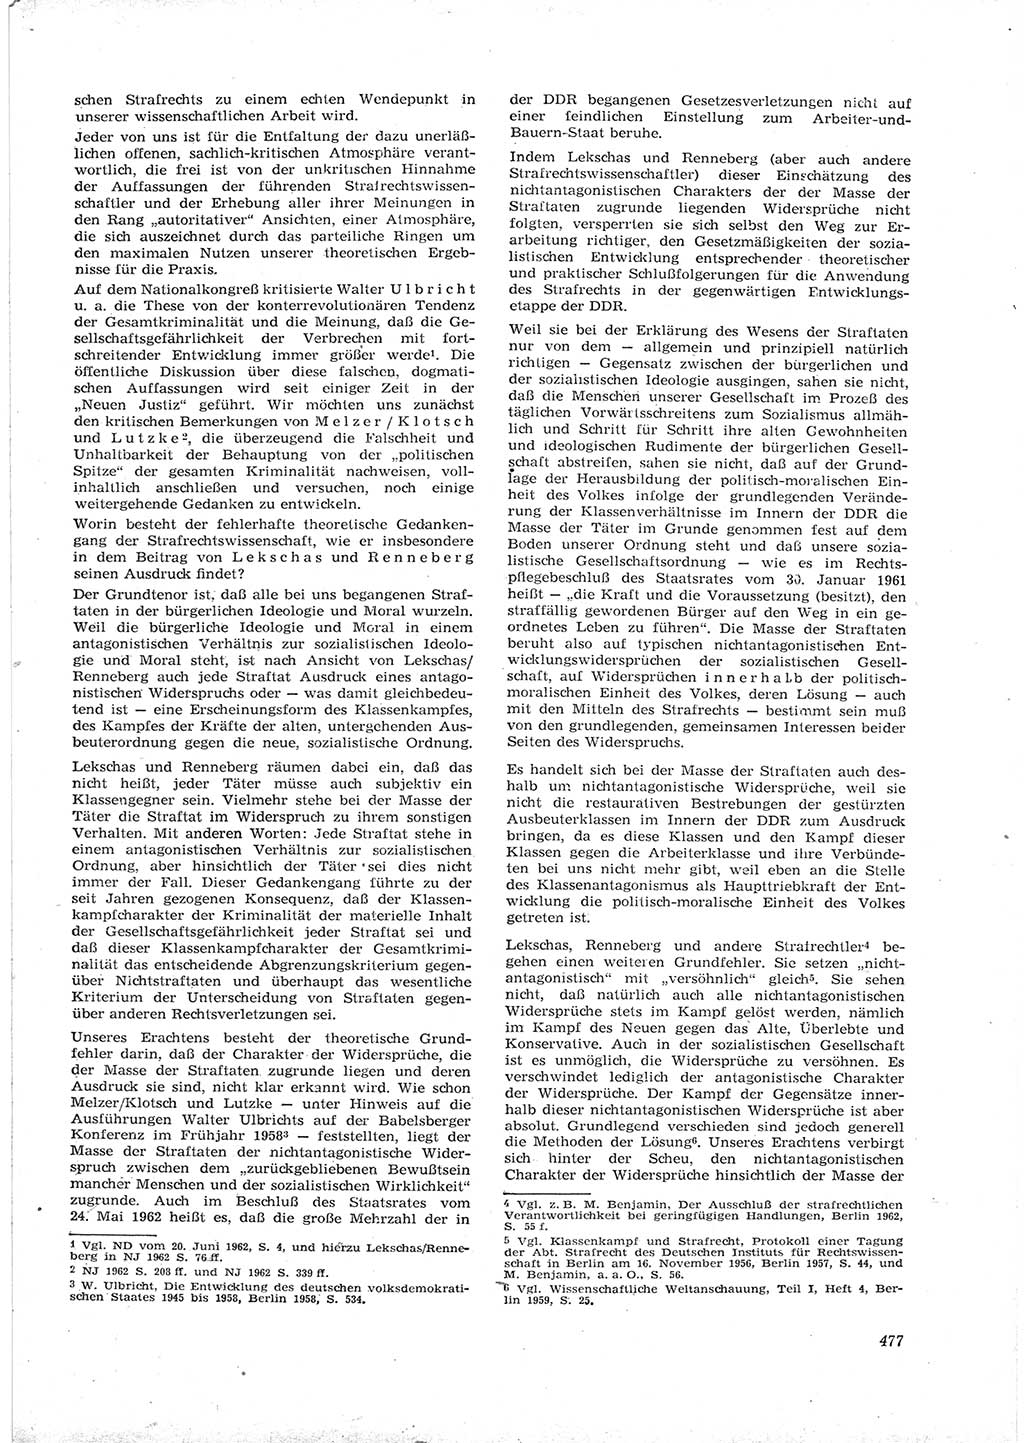 Neue Justiz (NJ), Zeitschrift für Recht und Rechtswissenschaft [Deutsche Demokratische Republik (DDR)], 16. Jahrgang 1962, Seite 477 (NJ DDR 1962, S. 477)